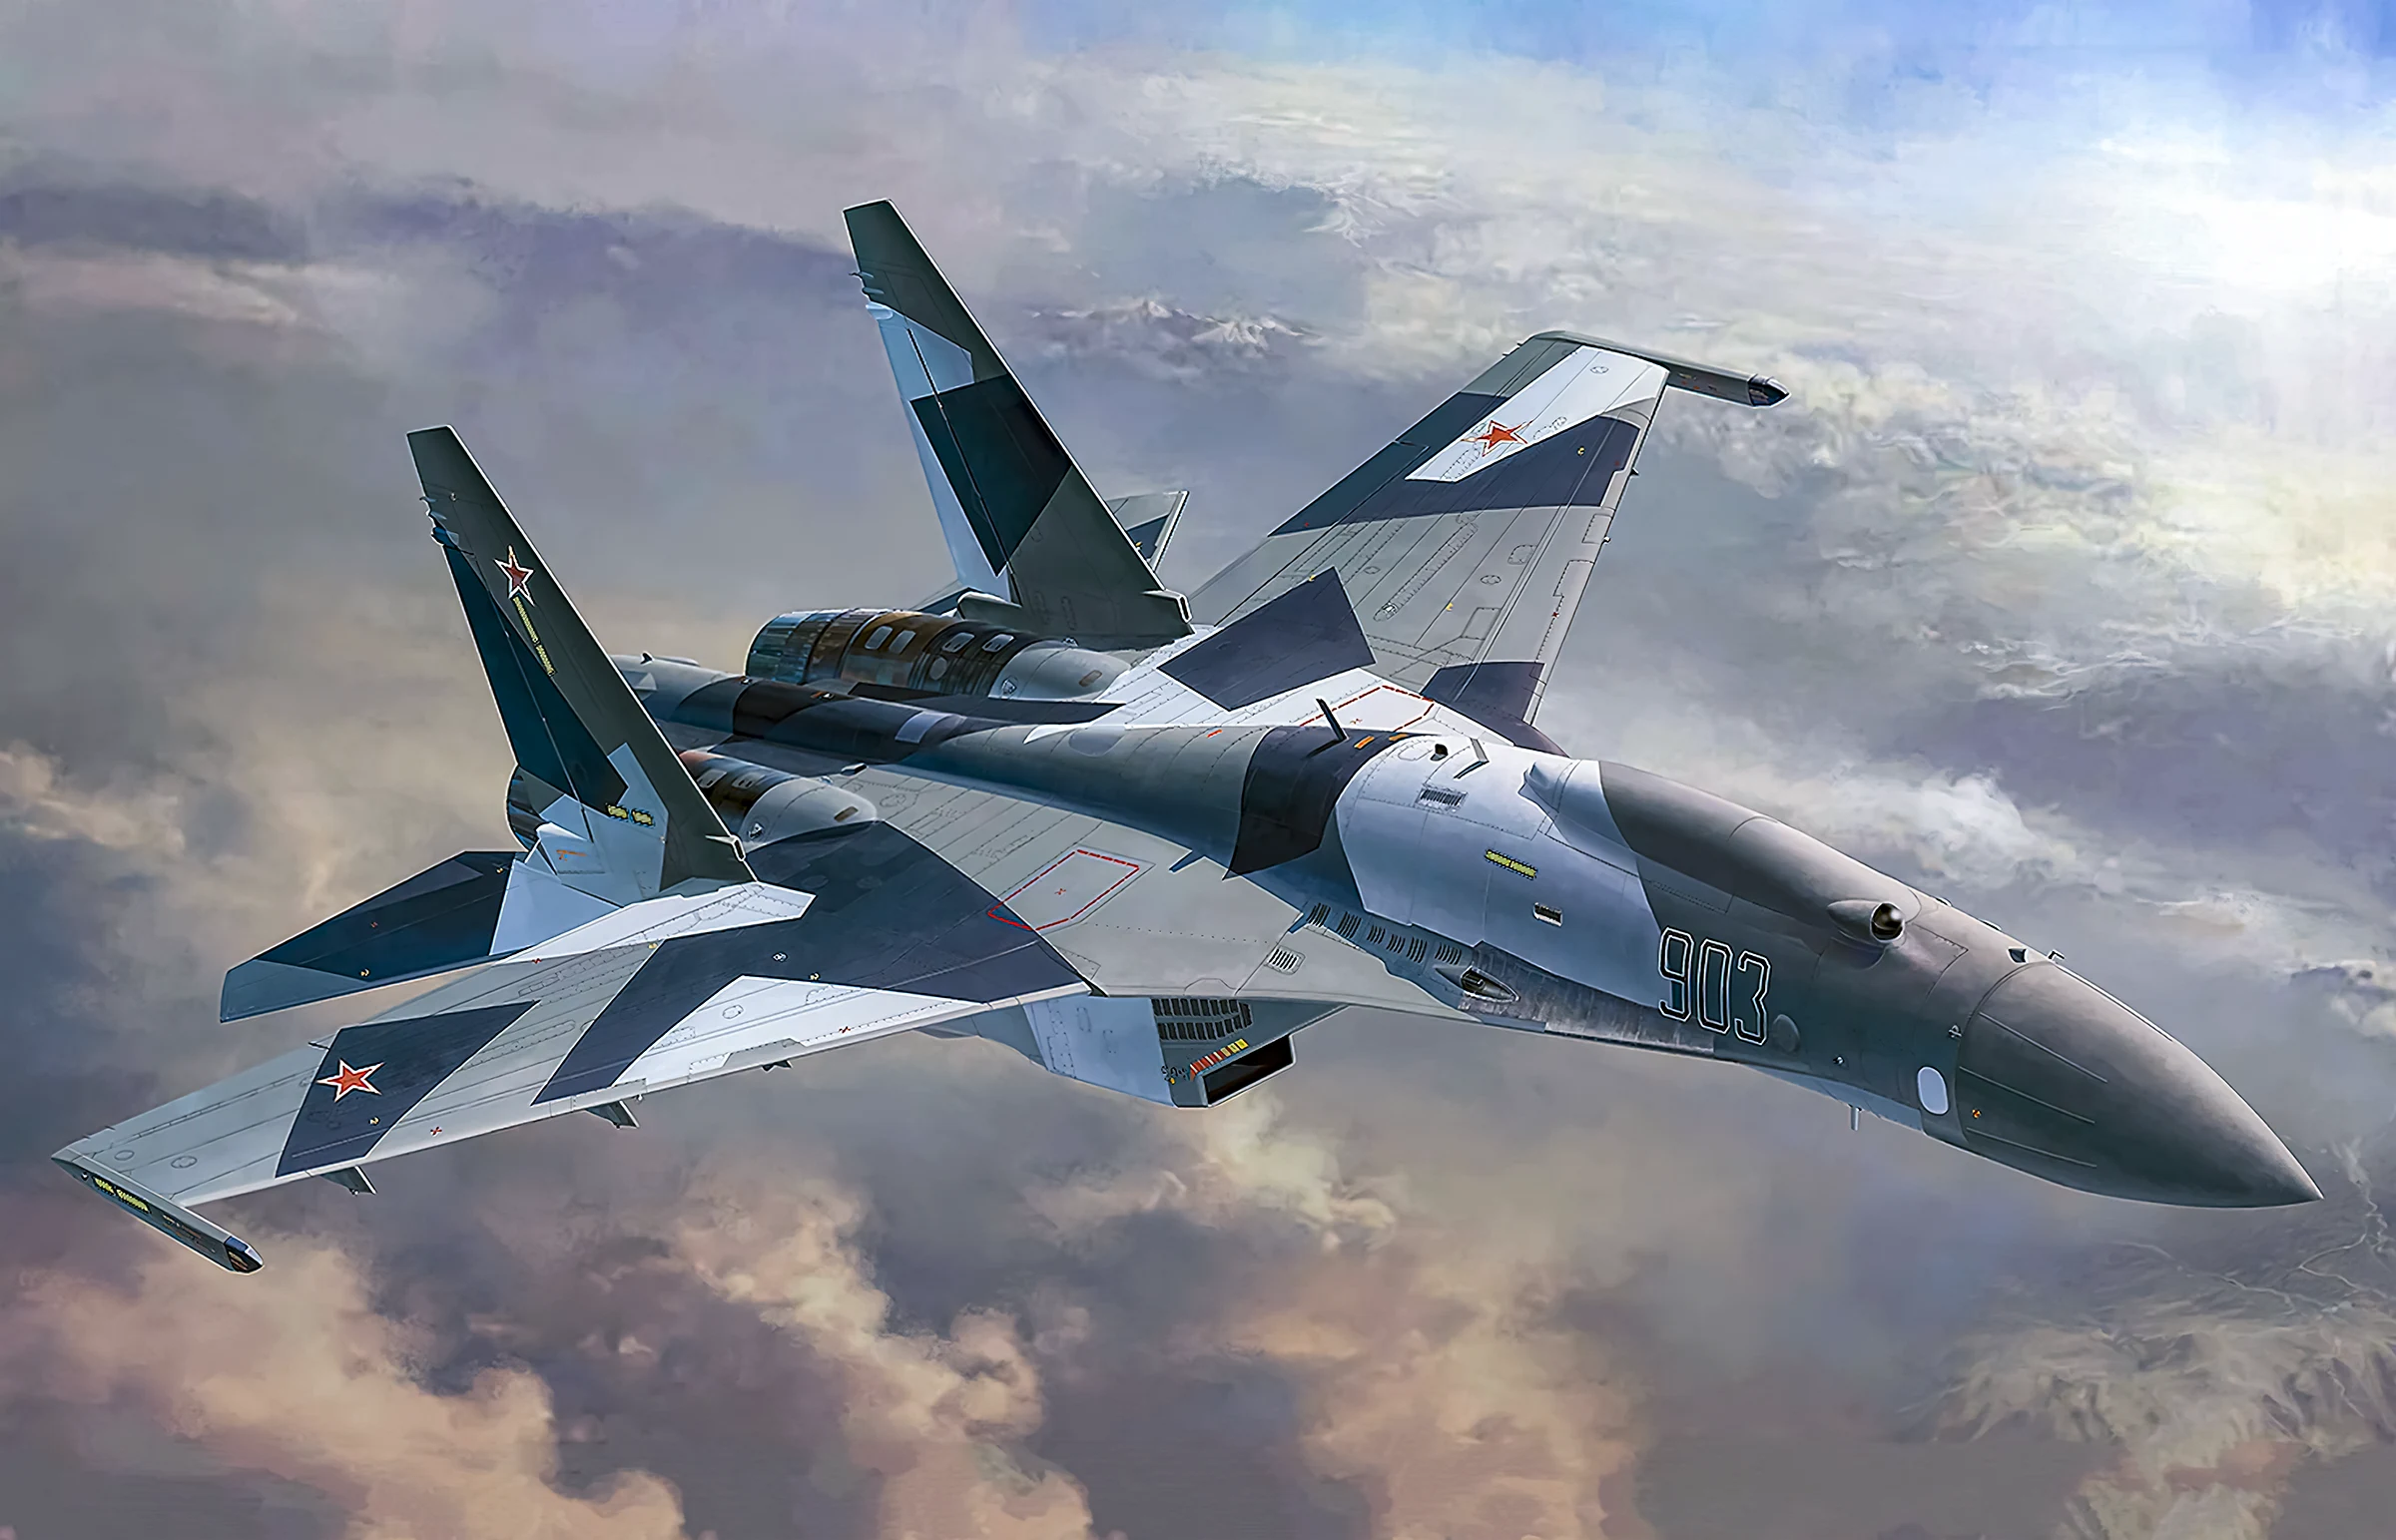 Su-35: El caza ruso “casi furtivo” con aspecto de F-22